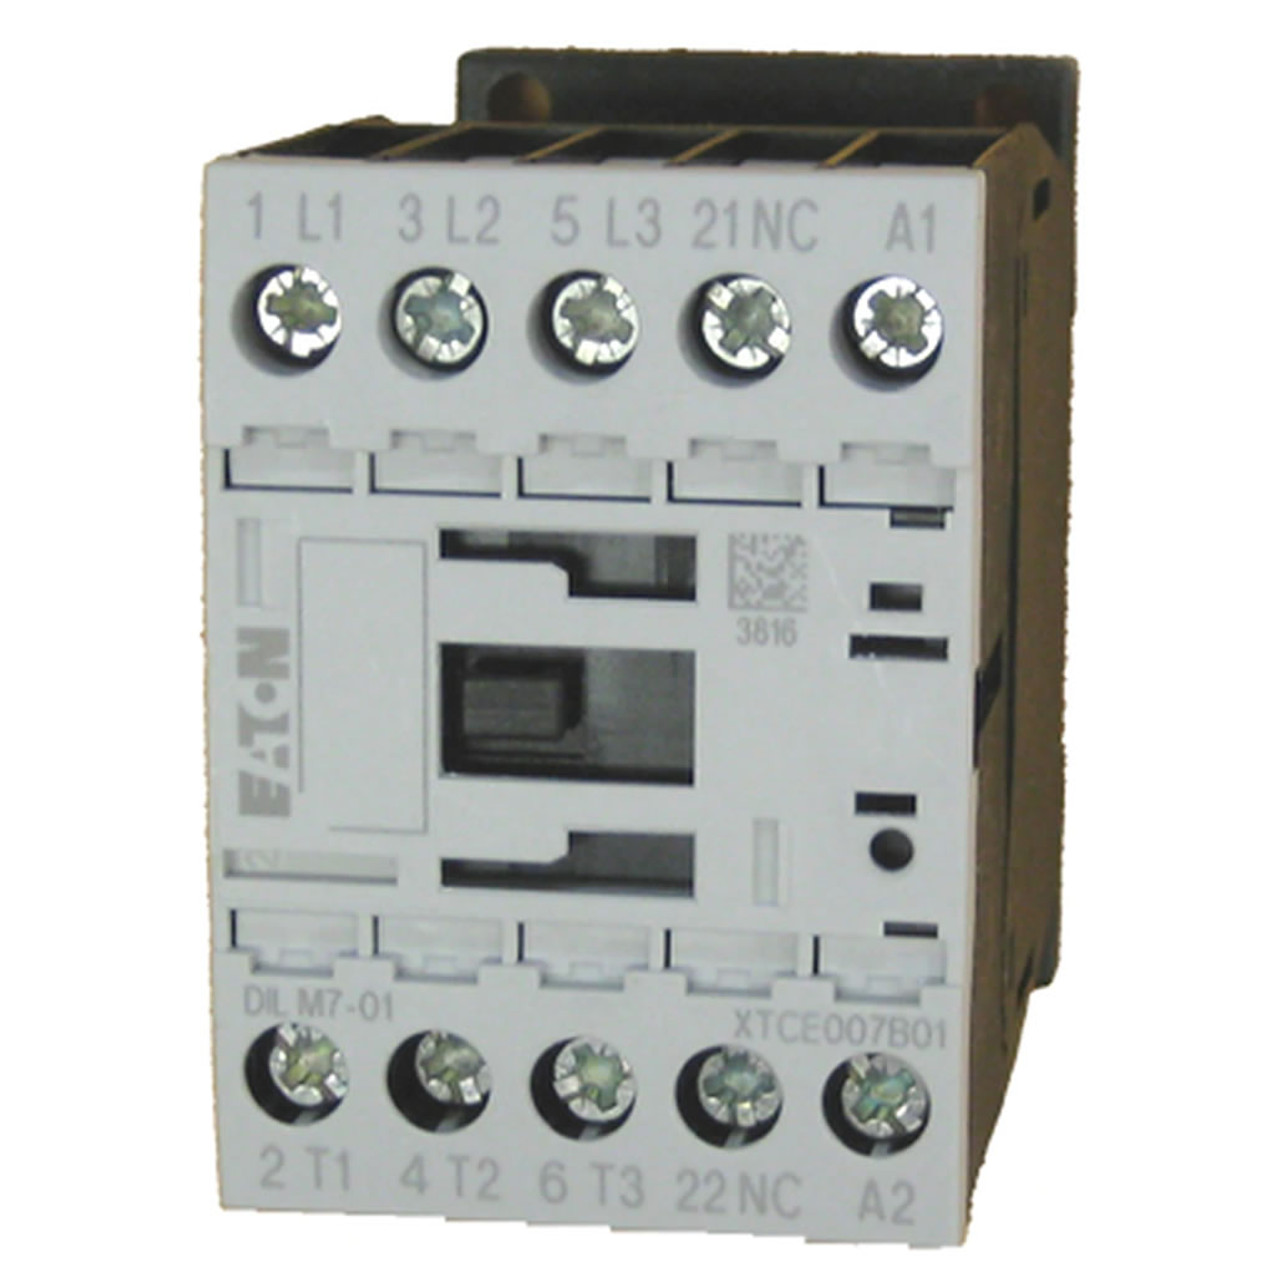 Eaton XTCE007B01B contactor